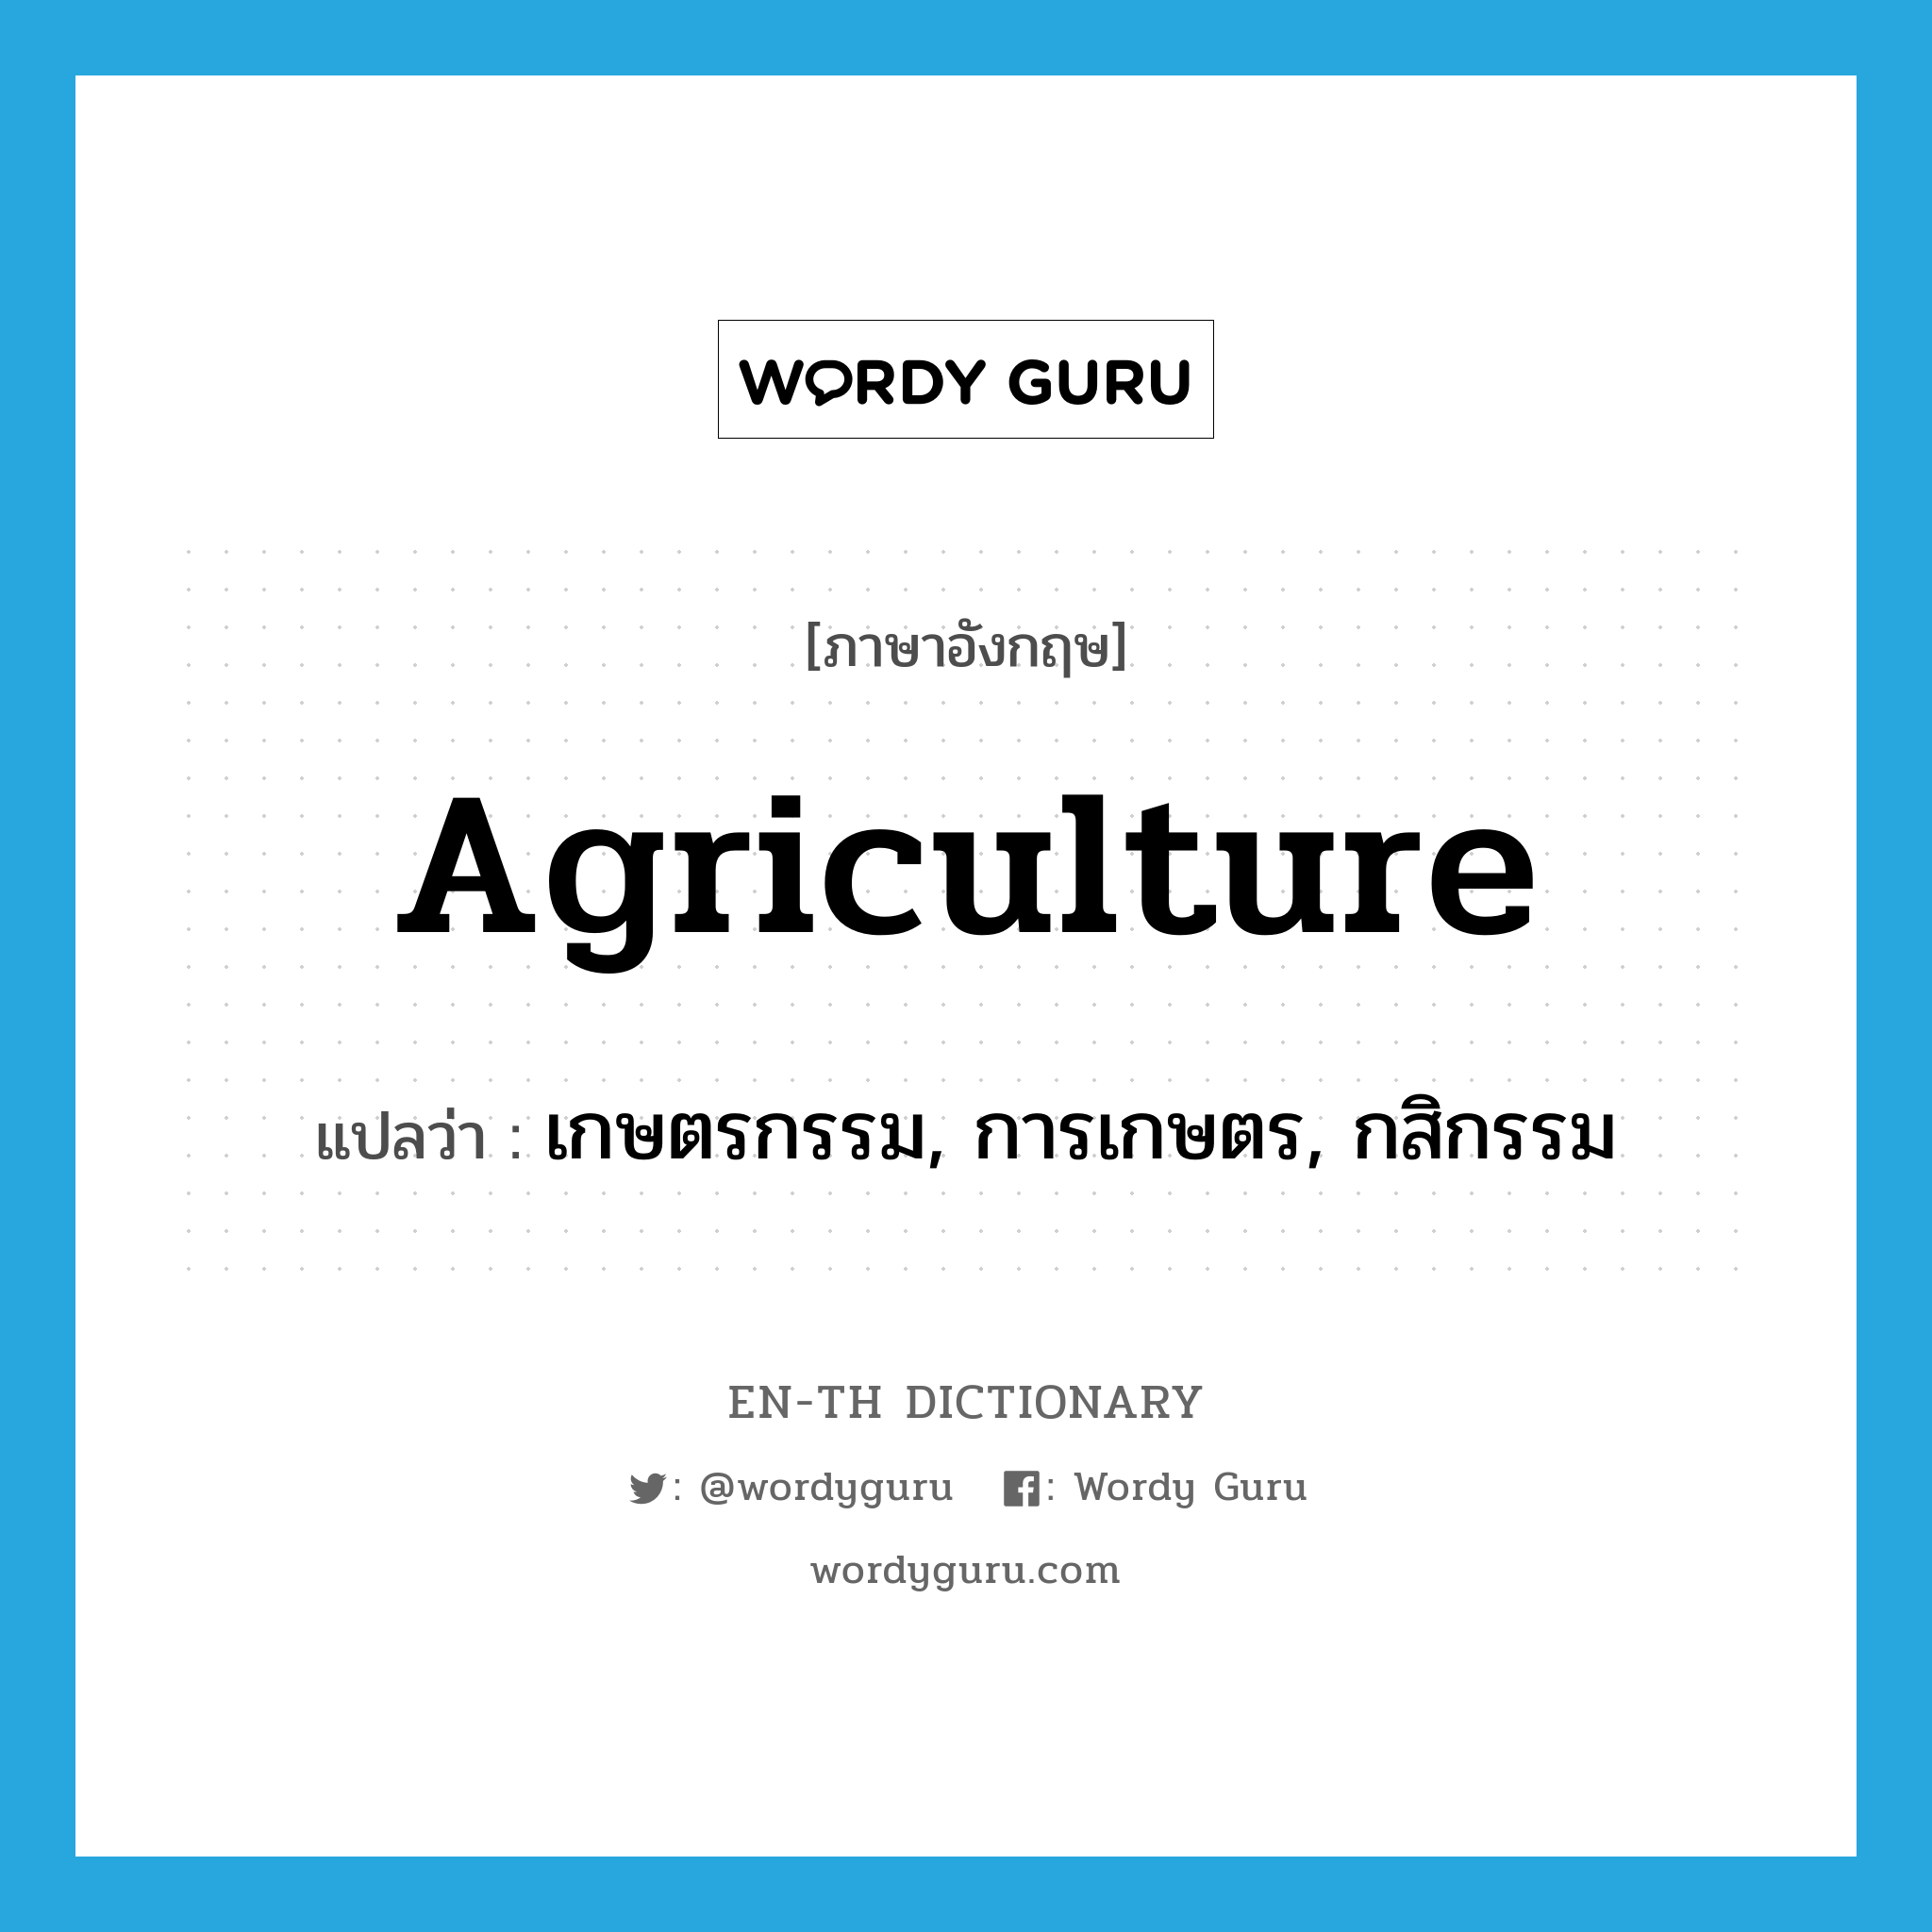 เกษตรกรรม, การเกษตร, กสิกรรม ภาษาอังกฤษ?, คำศัพท์ภาษาอังกฤษ เกษตรกรรม, การเกษตร, กสิกรรม แปลว่า agriculture ประเภท N หมวด N